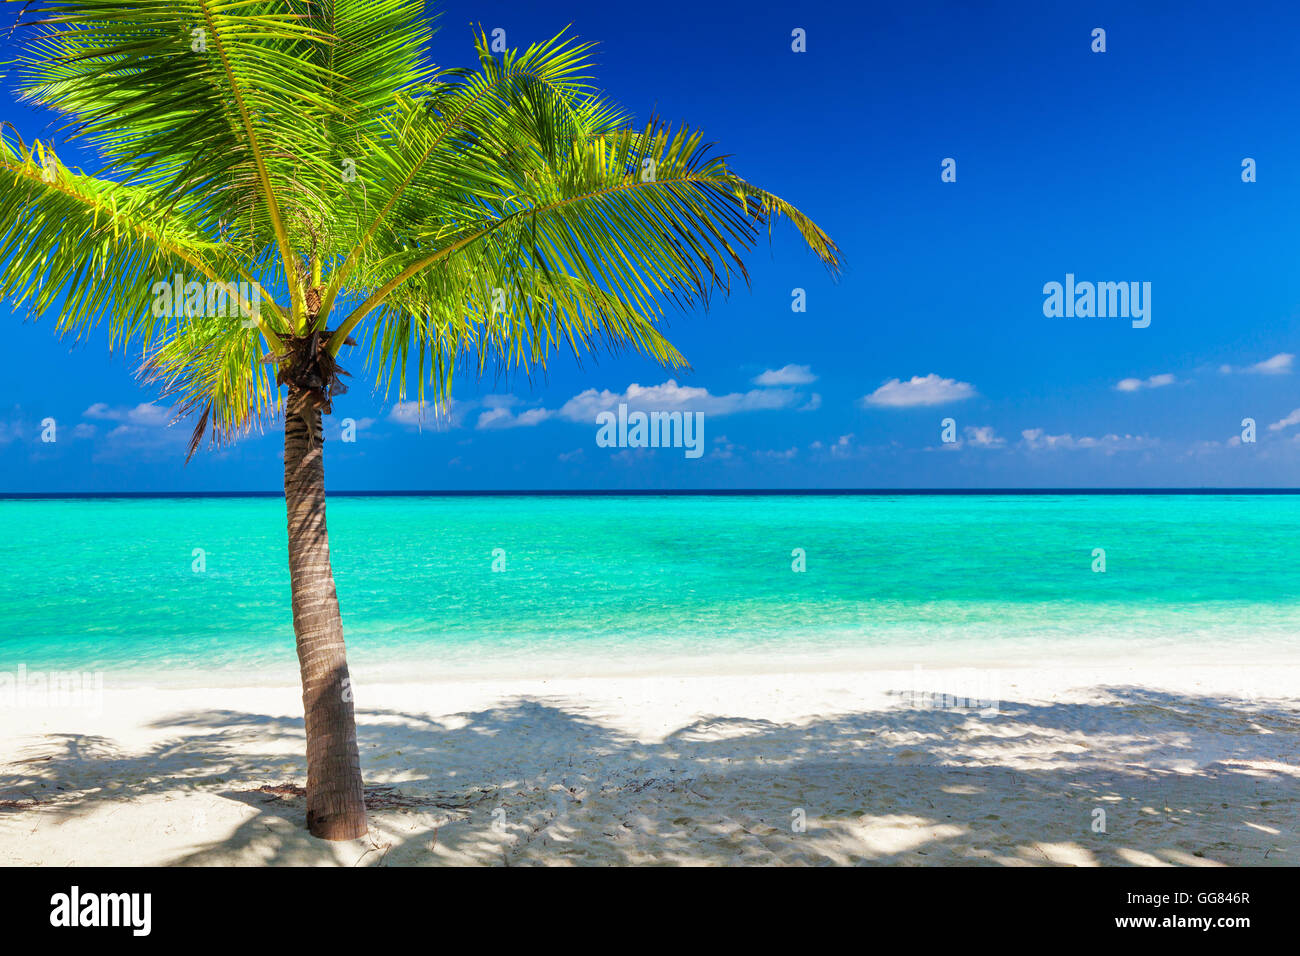 Unico vibrante coconut Palm tree su una bianca spiaggia tropicale delle Maldive Foto Stock